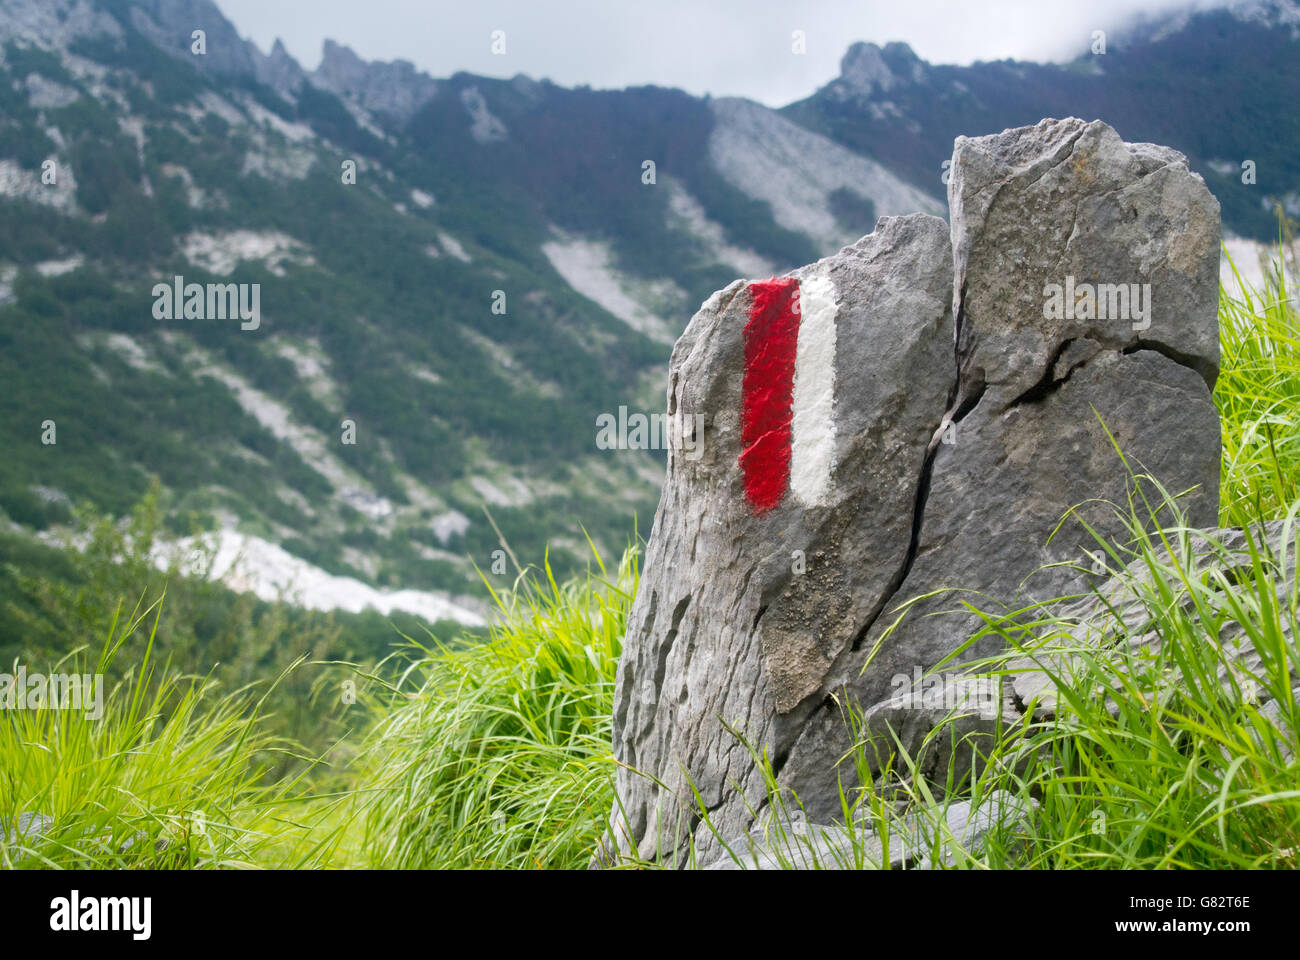 Le rouge et le blanc chemin d'inscription peinte sur une pierre dans le Parc Naturel des Alpes Apuanes, Toscane, Italie Banque D'Images